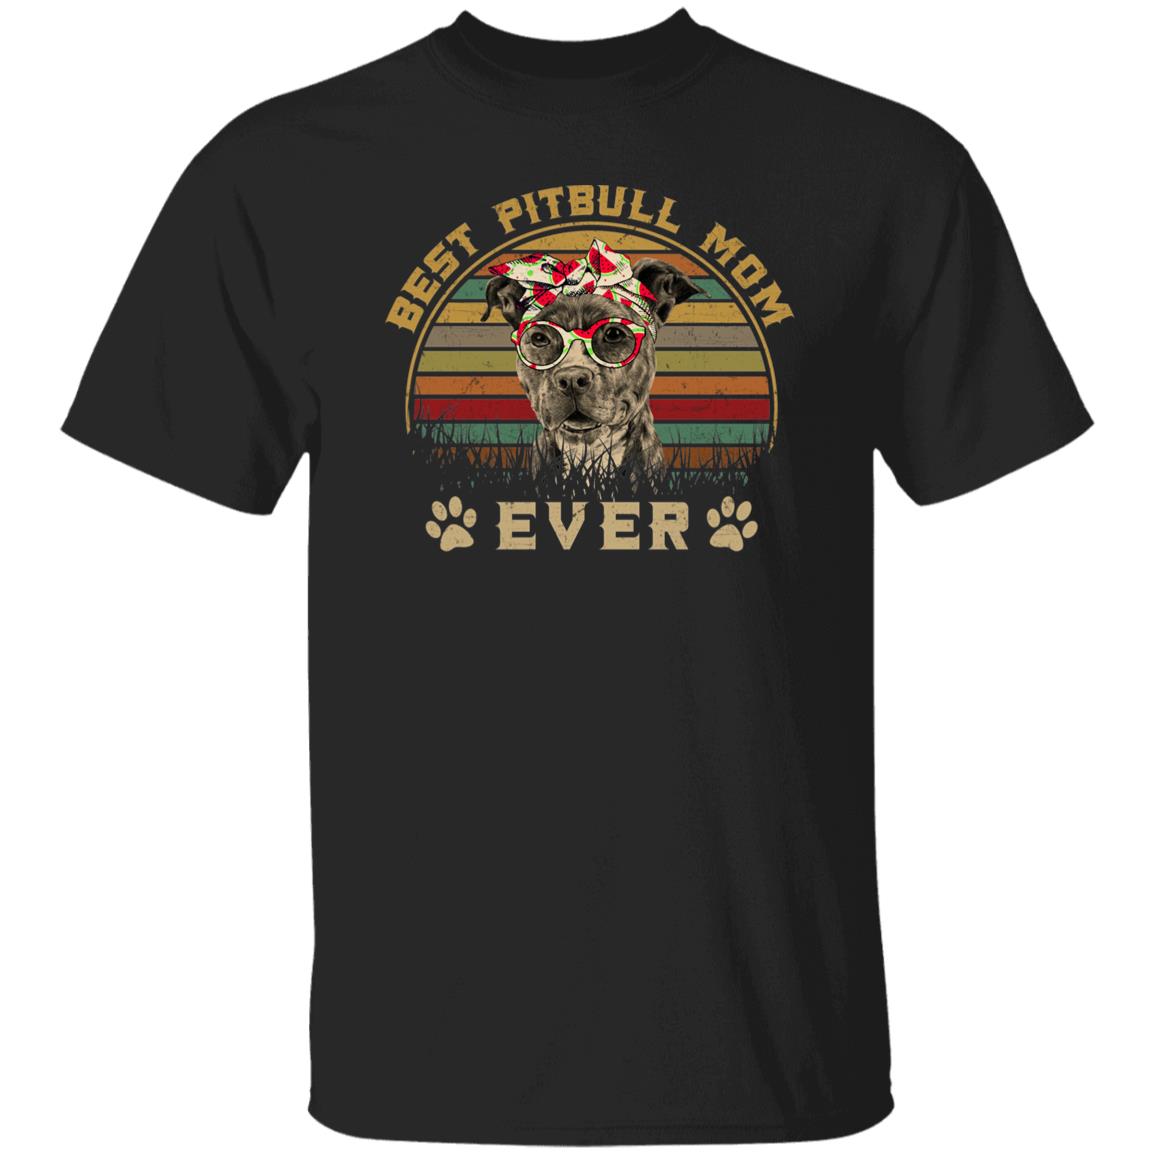 Best Pitbull Mom Ever Unisex T-Shirt gift Pitbull dog owner tee black dark heather-Family-Gift-Planet